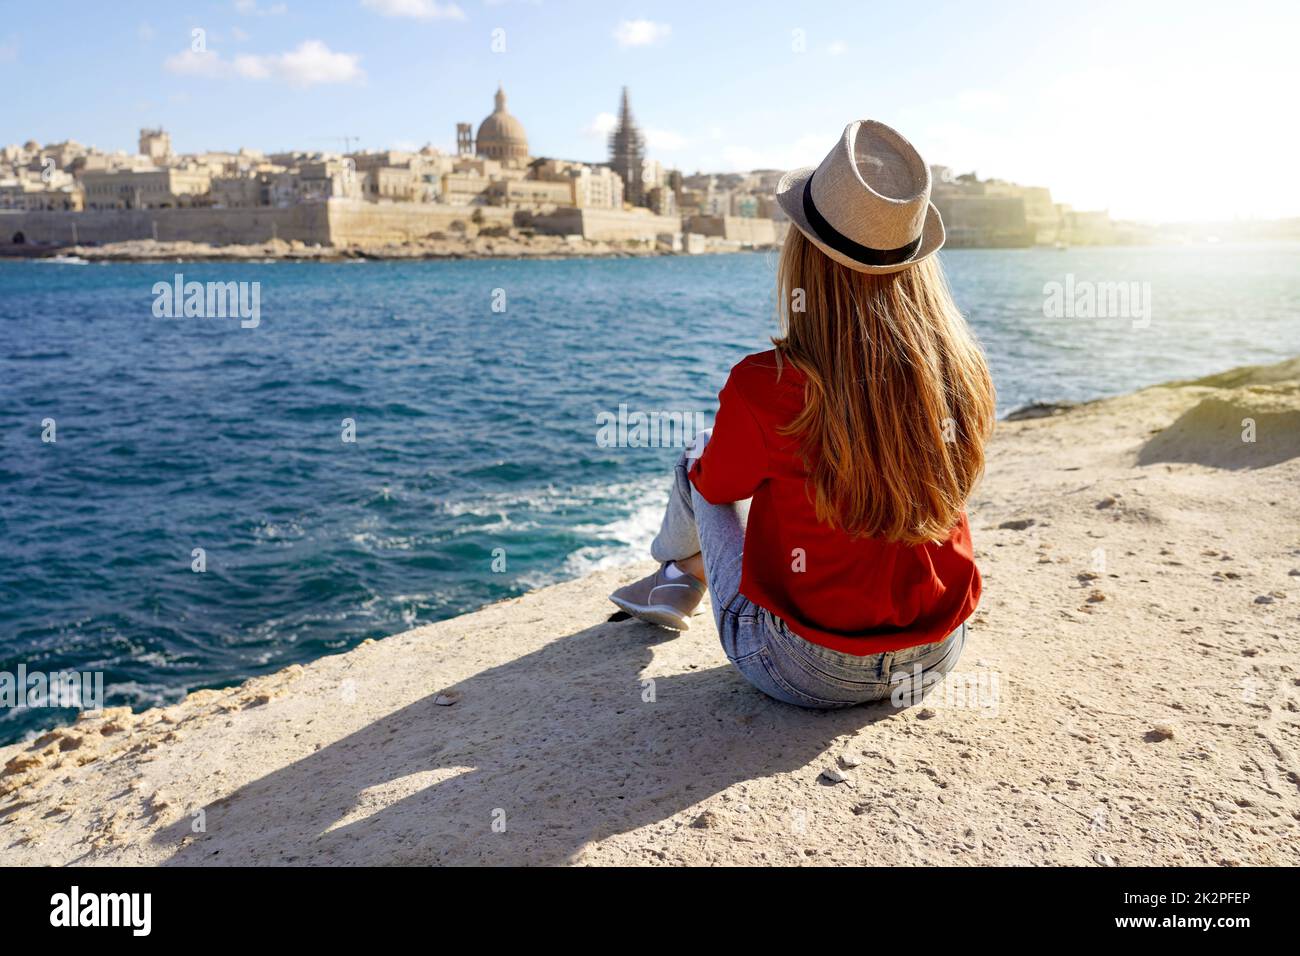 Das Mädchen sitzt am Meeresrand und genießt die atemberaubende Landschaft von Valletta, Malta. Reisekonzept mit unabhängigen Personen, die Outdoor-Freizeitaktivitäten und Wanderlust-Leben betreiben. Stockfoto